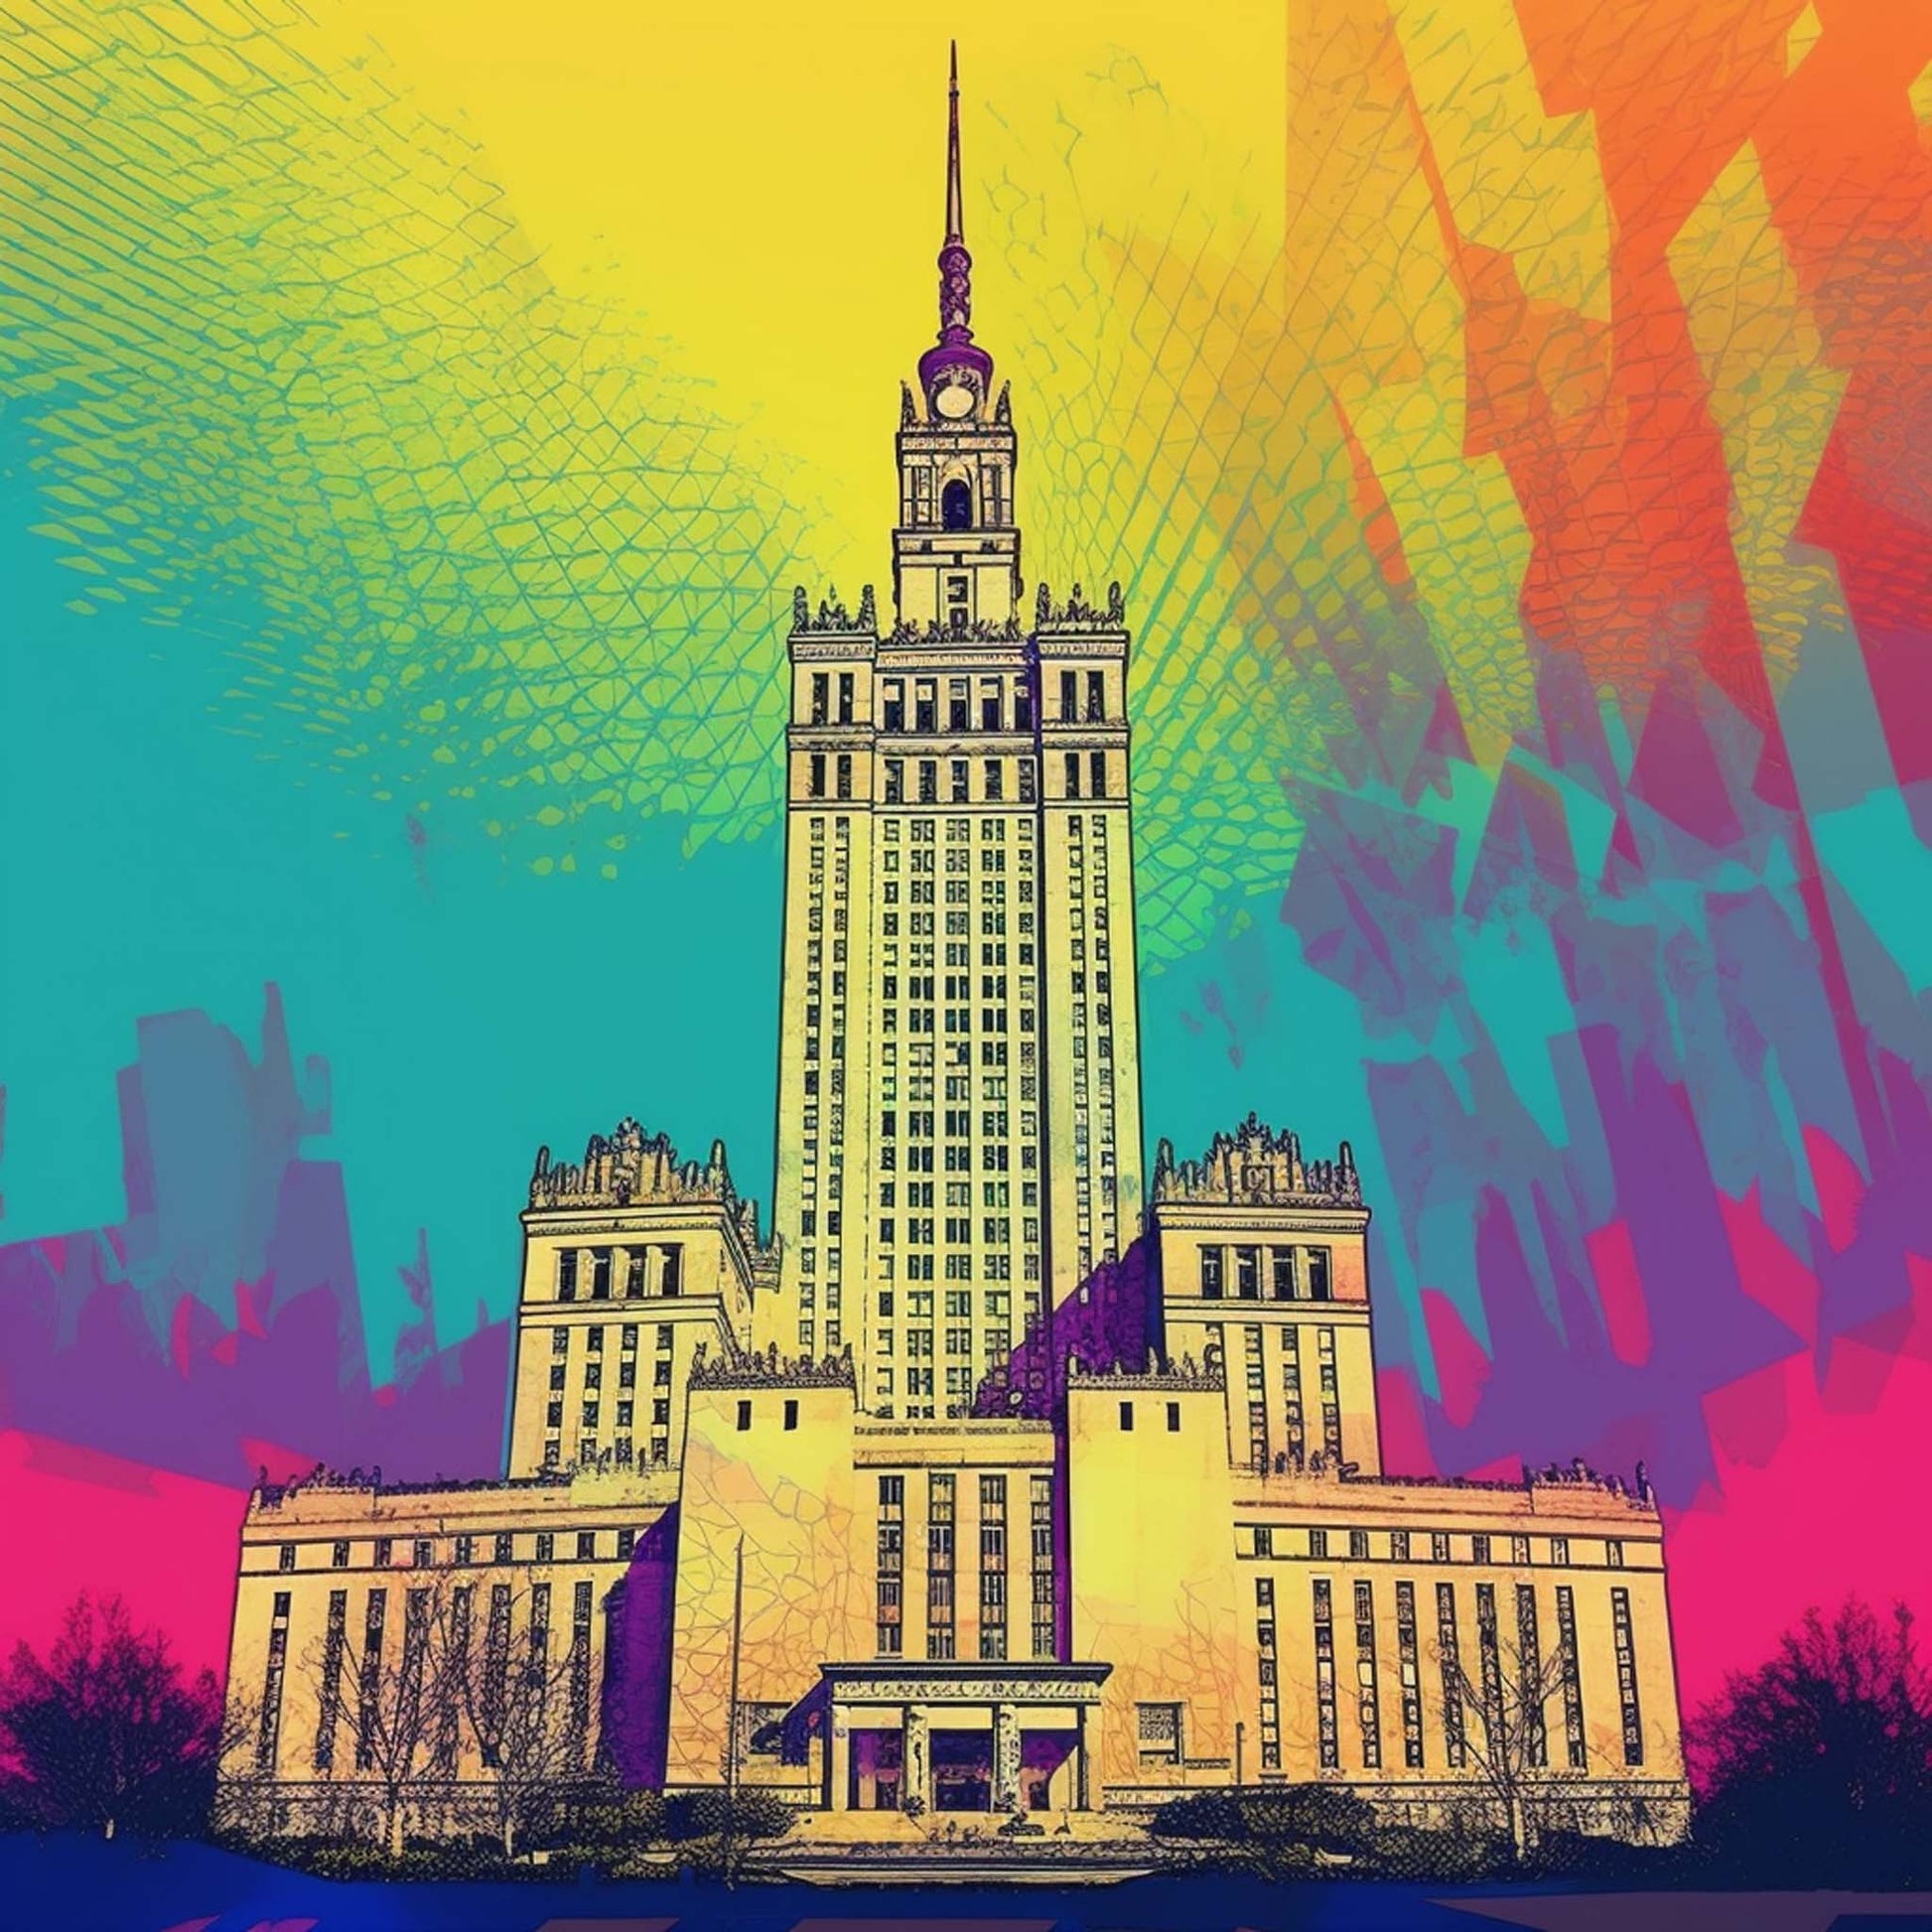 Urbanisto - Warschau Kulturpalast - Wandbild in der Stilrichtung der Pop-Art